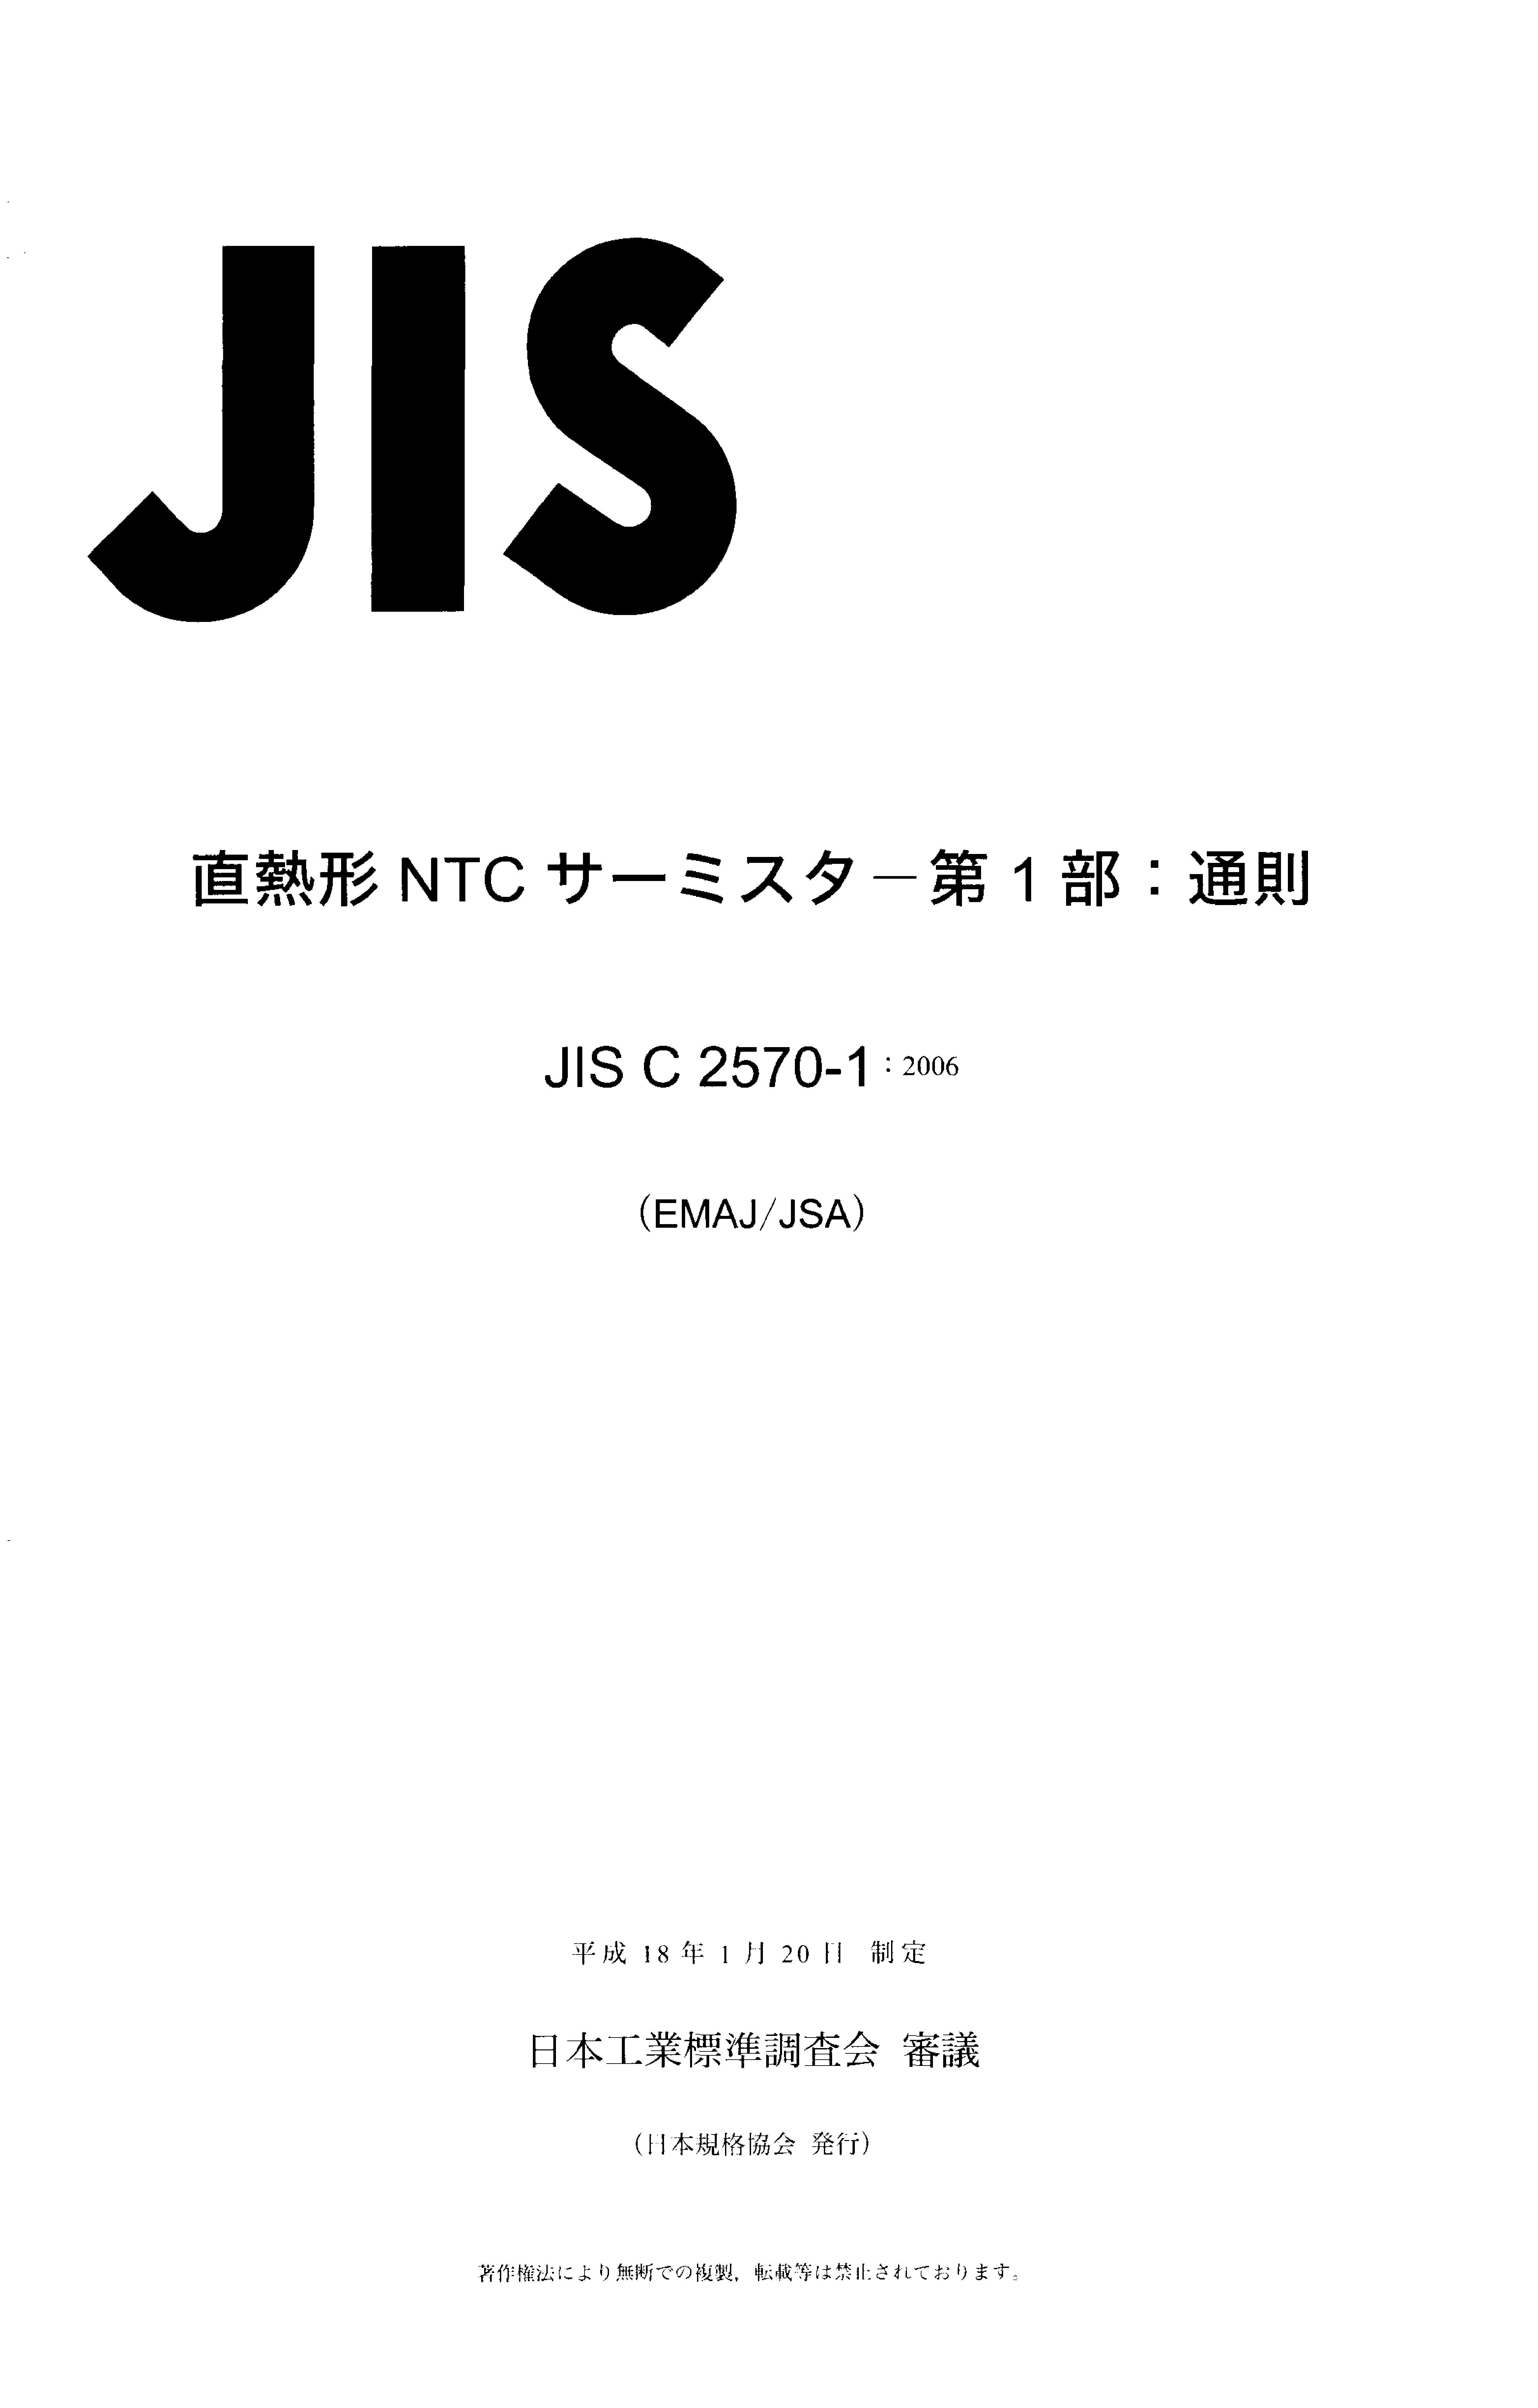 JIS C 2570-1:2006封面图